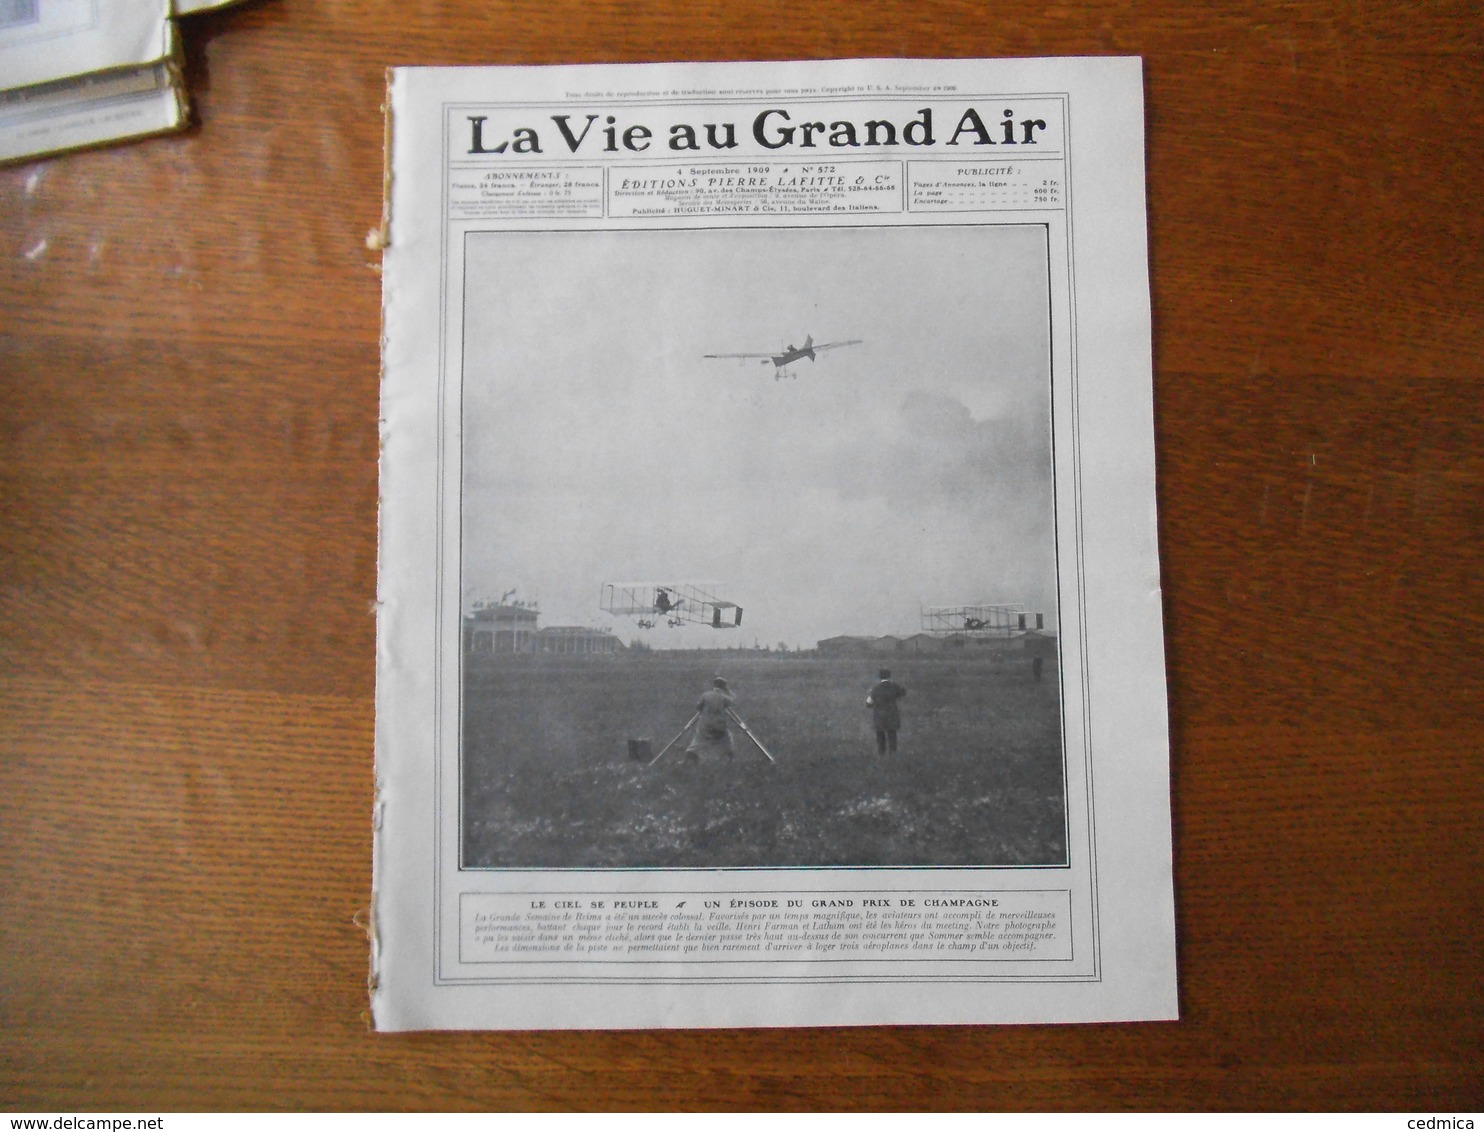 LA VIE AU GRAND AIR N°572 DU 4 SEPTEMBRE 1909 LE GRAND PRIX DE CHAMPAGNE MEETING AERONAUTIQUE 32 PAGES - 1900 - 1949